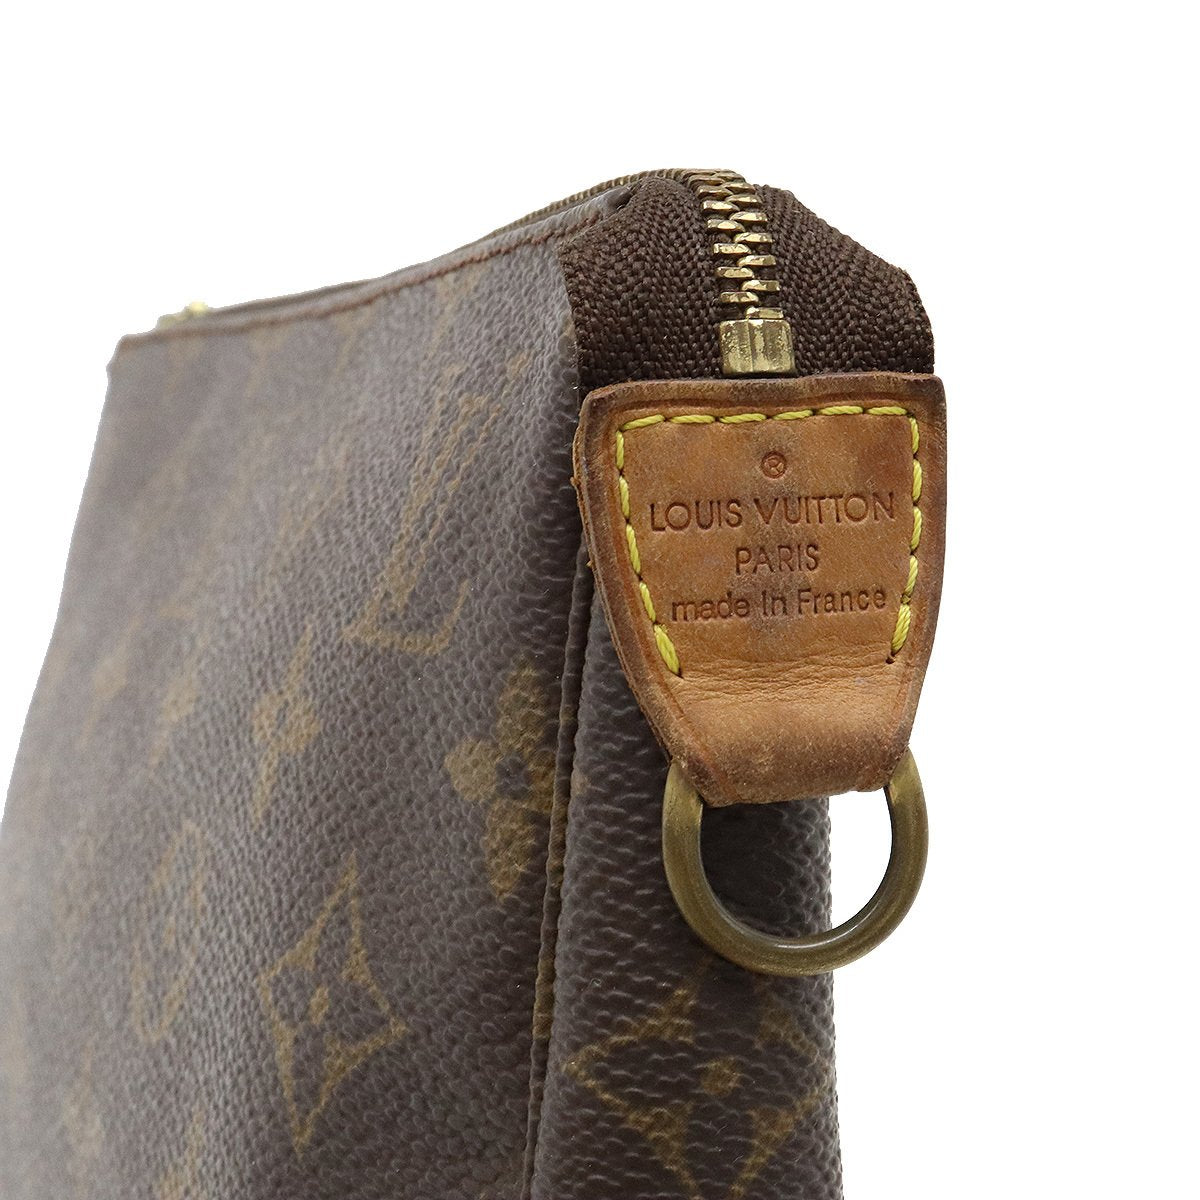 Louis Vuitton 2001 Pre-owned Monogram Pochette Accessoires Handbag - Brown